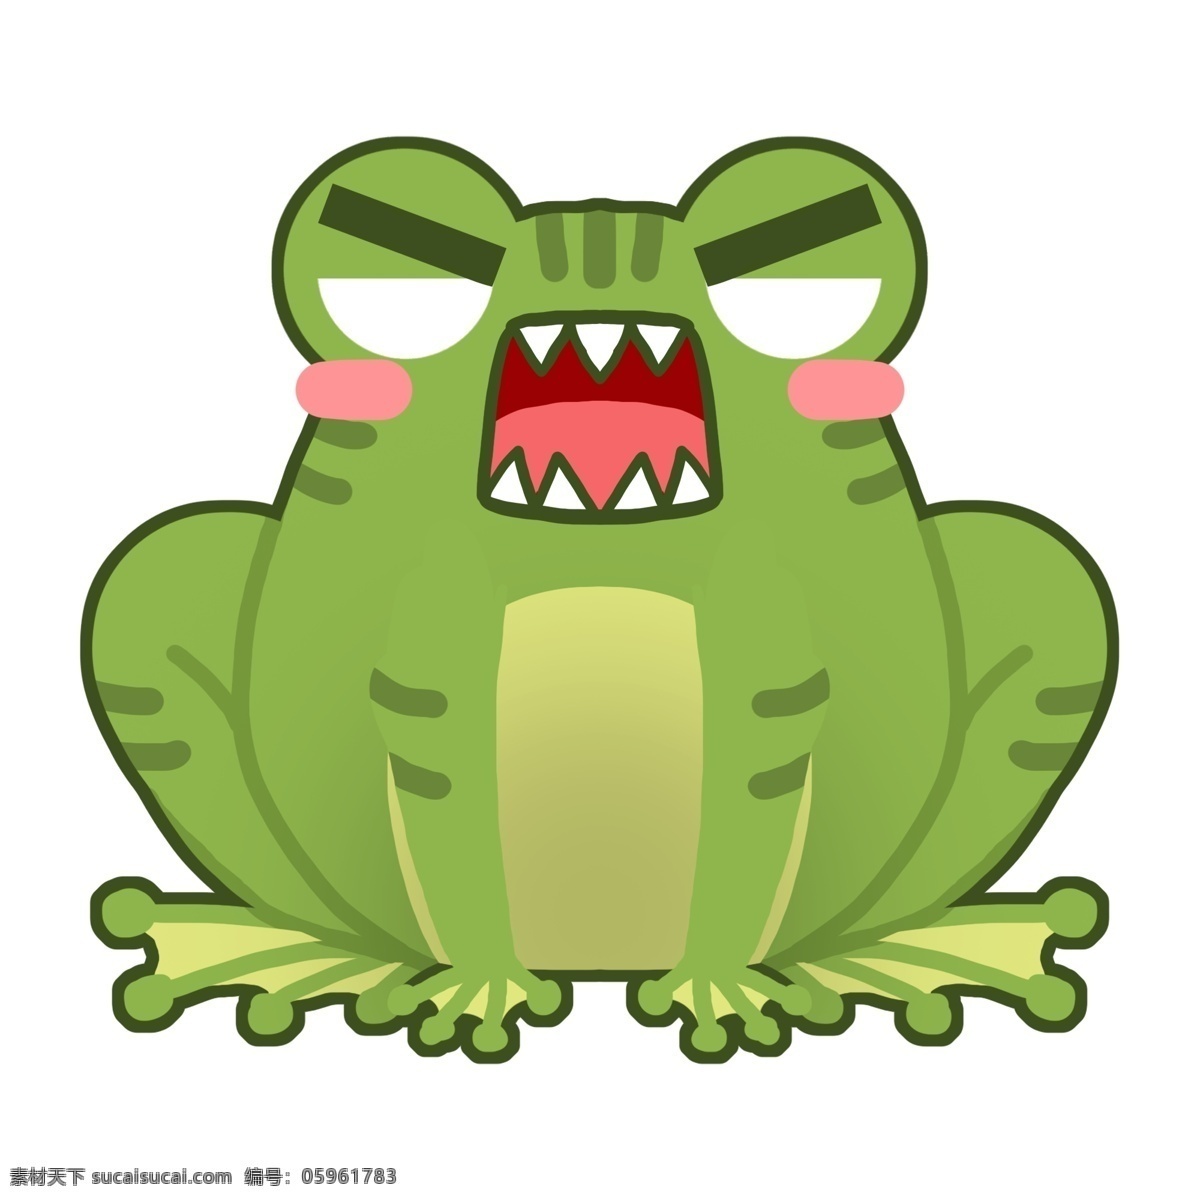 愤怒的青蛙 表情包 发火 卡通